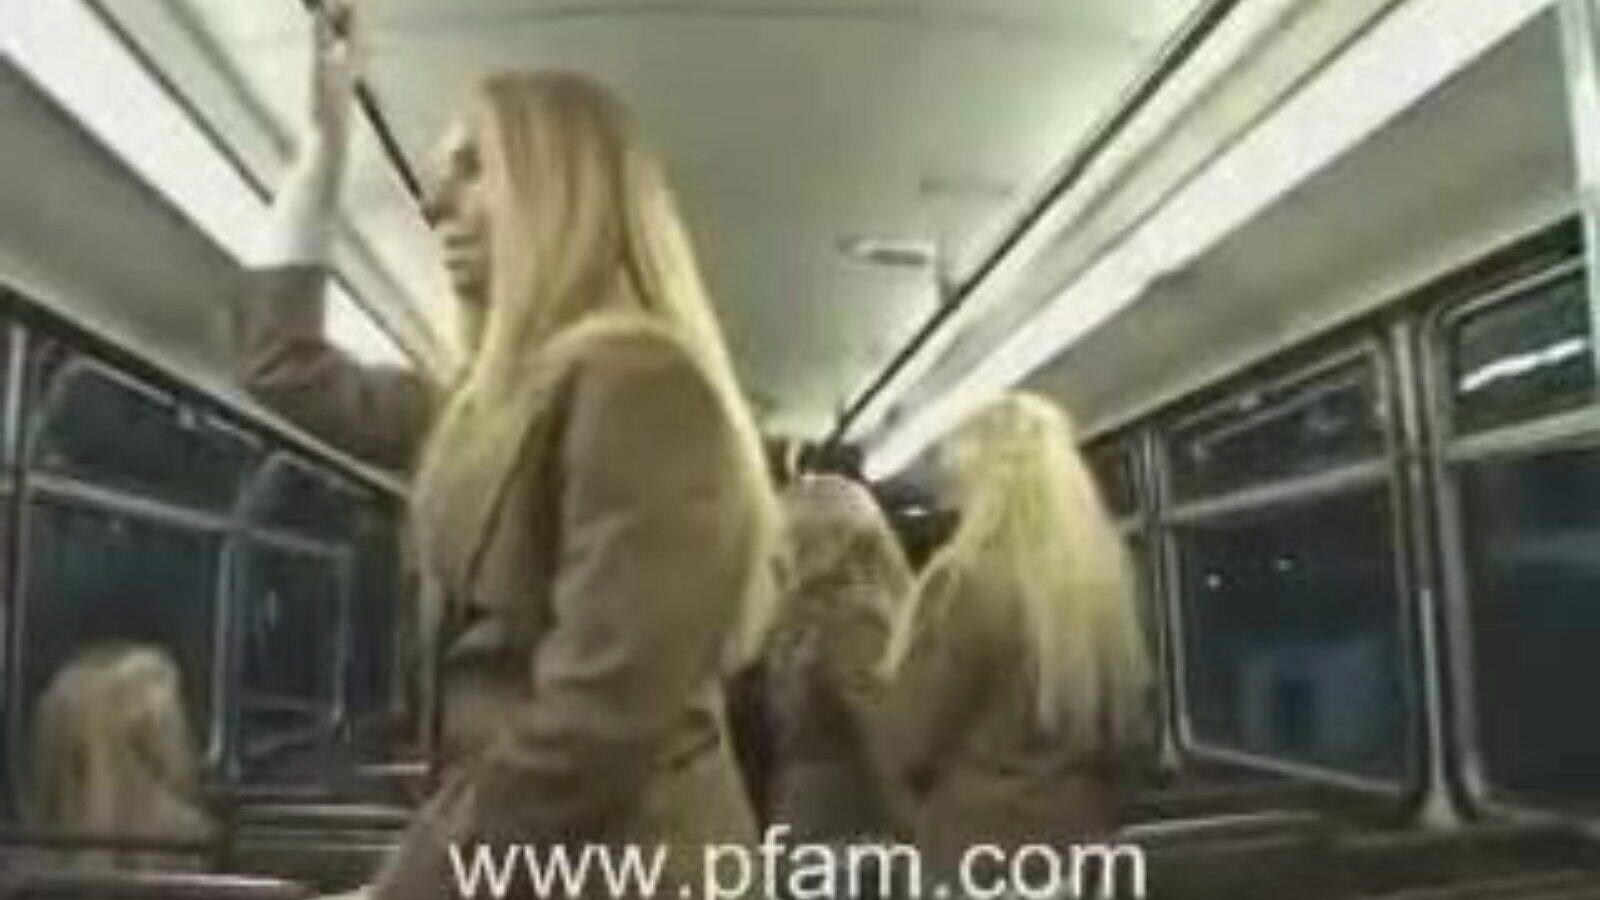 valkoinen koulutyttö ja aasialainen kaveri vaalea college hotty tekee handjobia japanilaiselle pojalle bussissa.